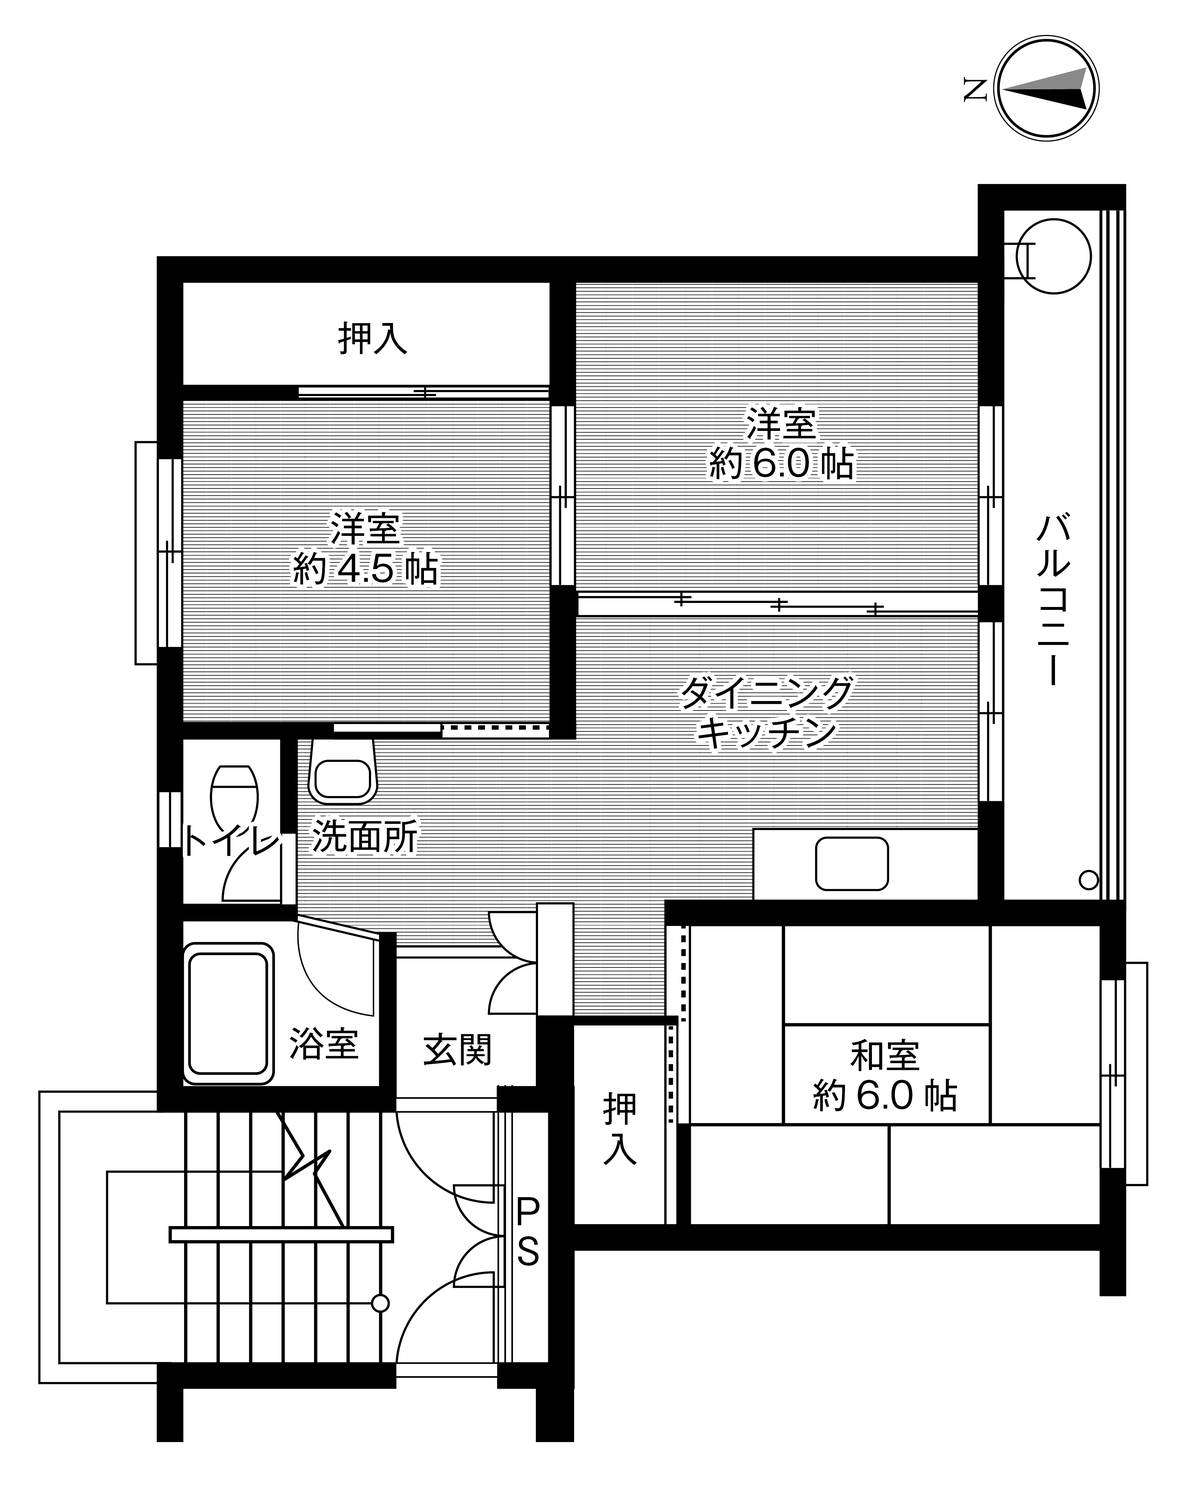 Sơ đồ phòng 3DK của Village House Kushibiki ở Hachinohe-shi